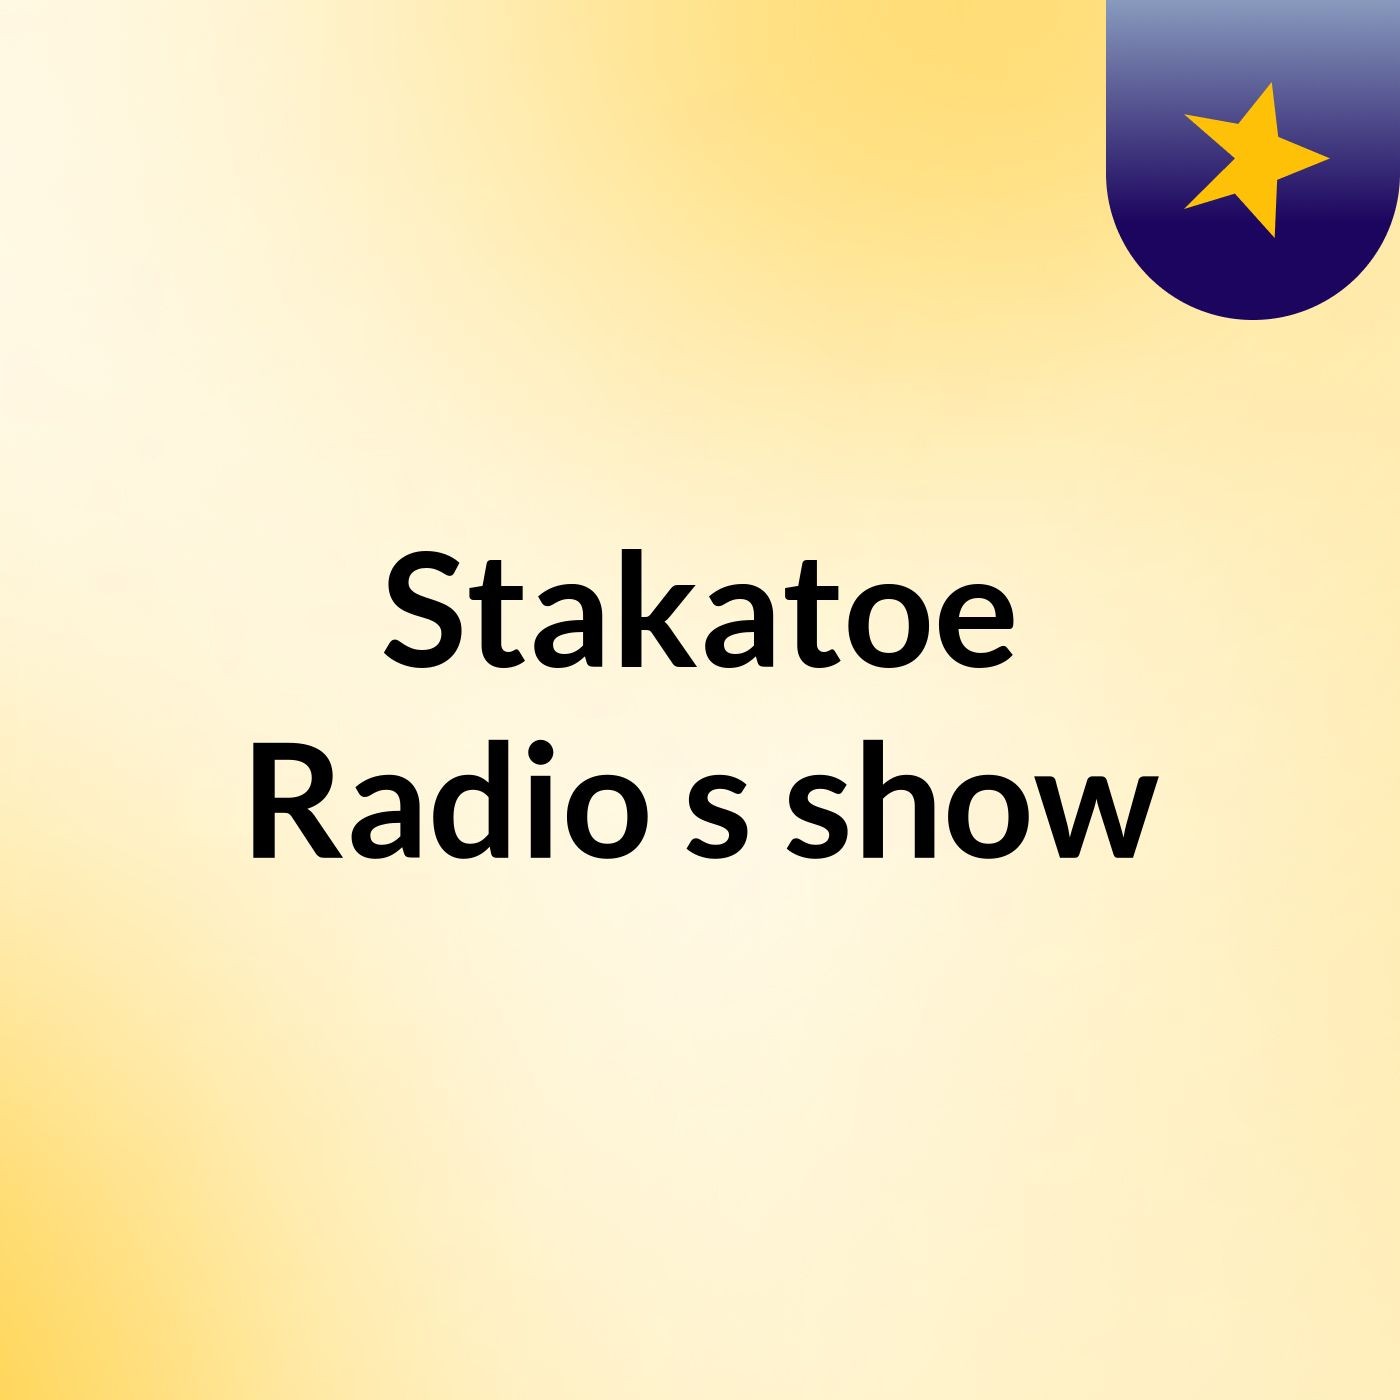 Stakatoe Radio's show